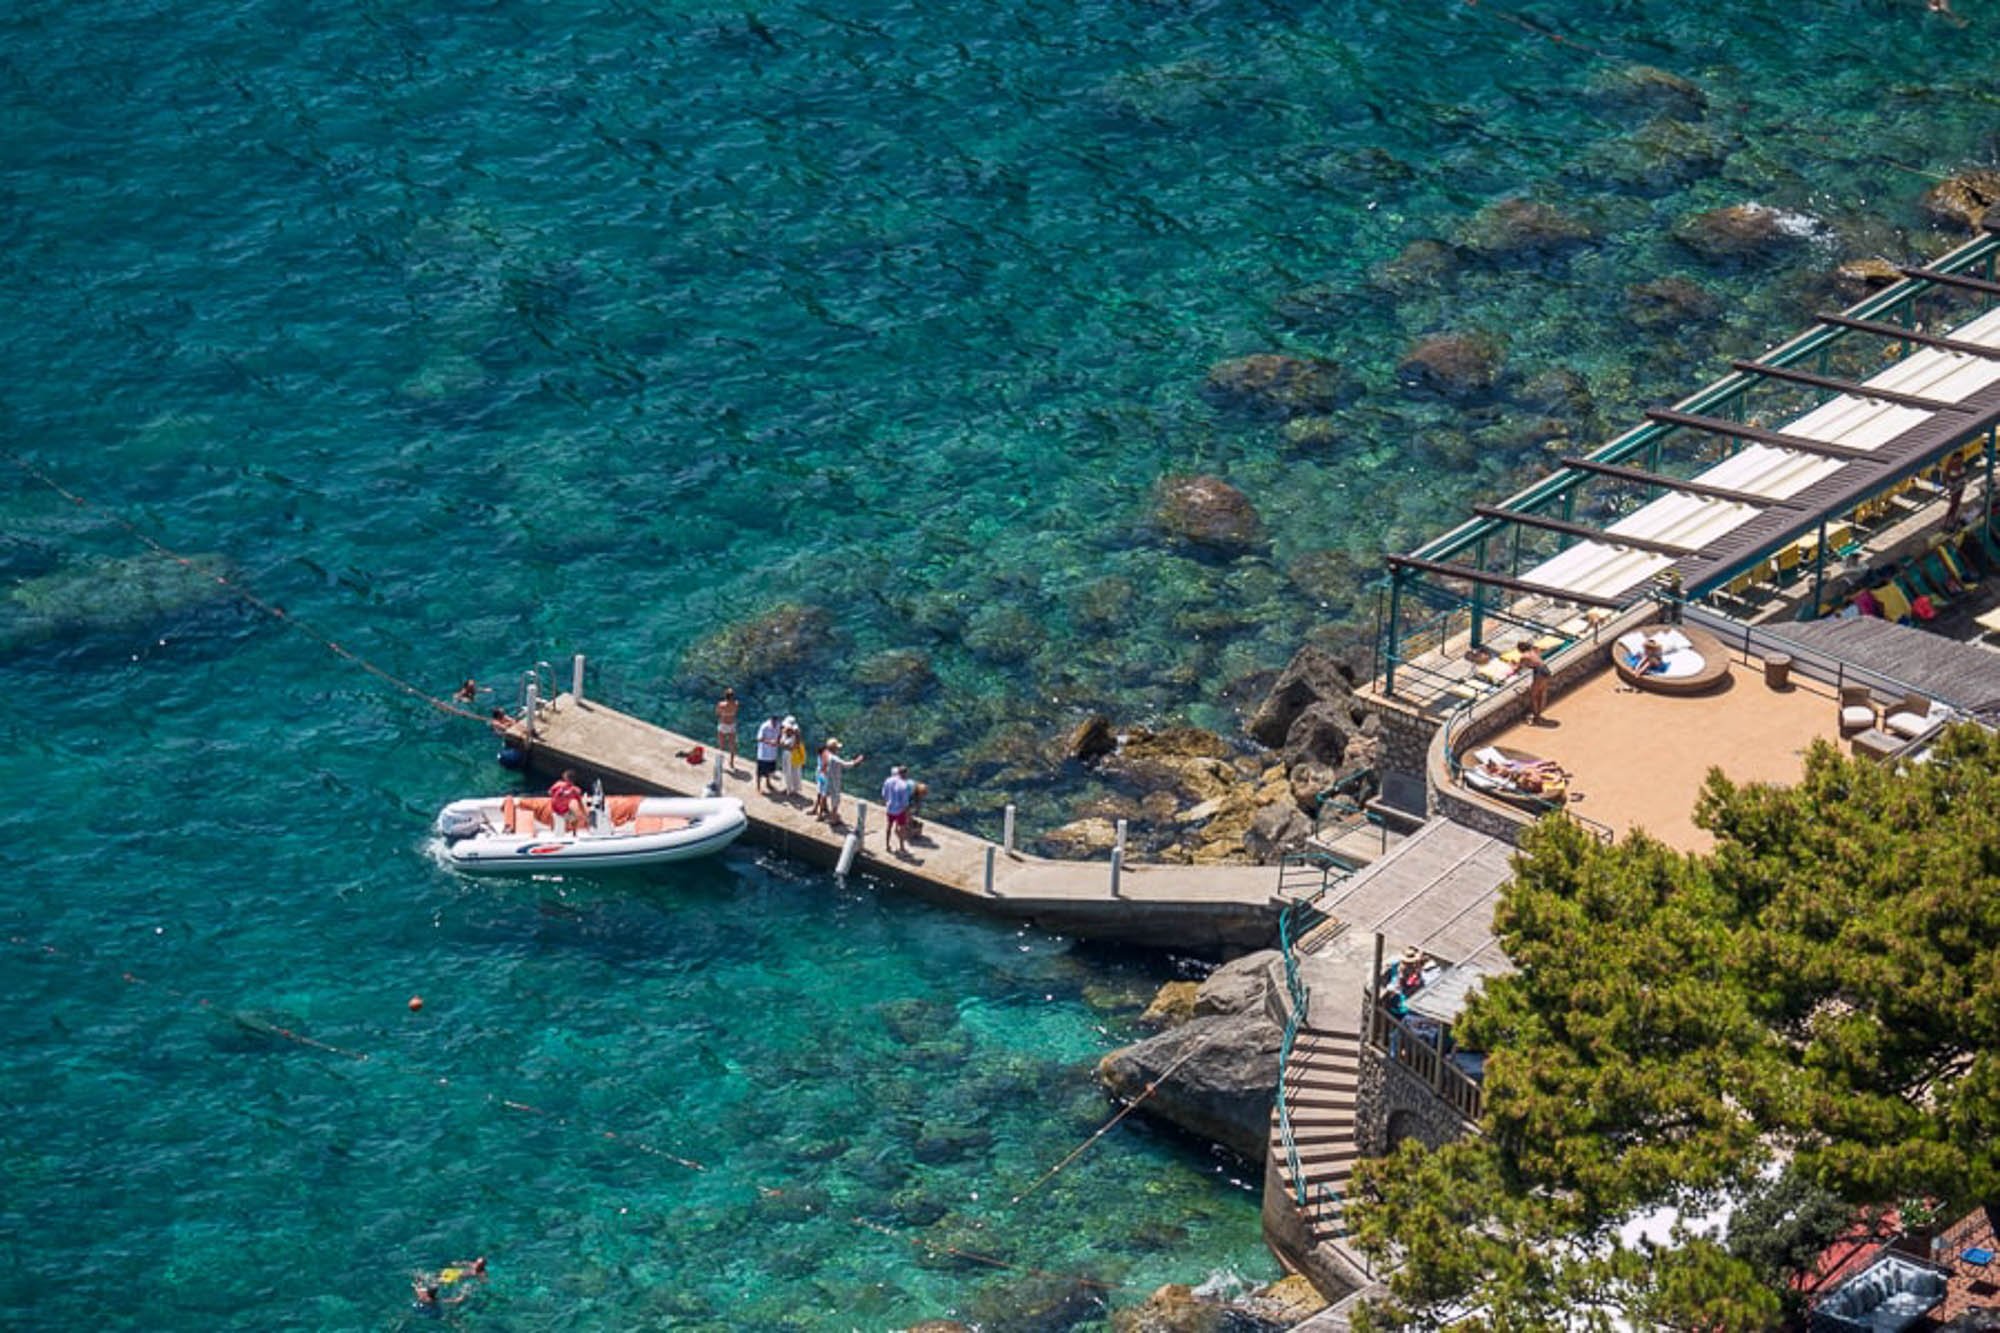 La Canzone del Mare, a Capri beach club, is the largest of the beach clubs Capri